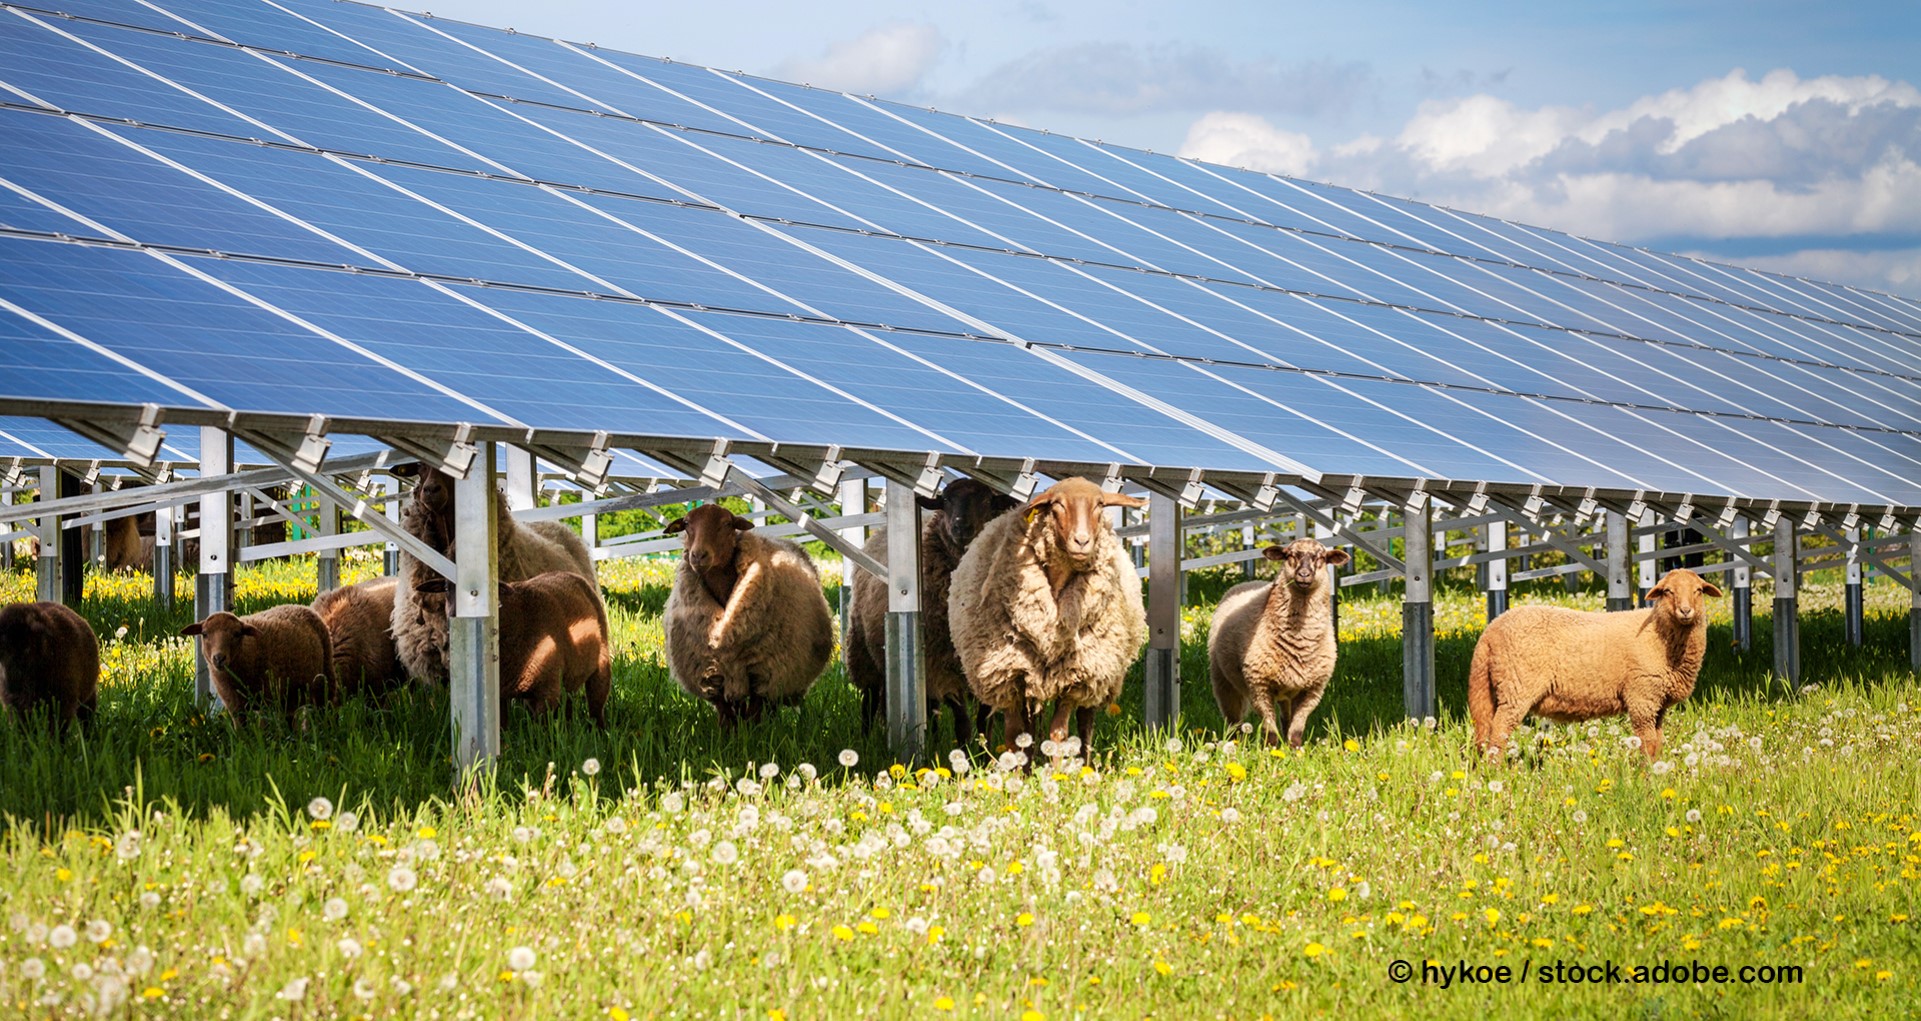 Solarpark mit Schafen